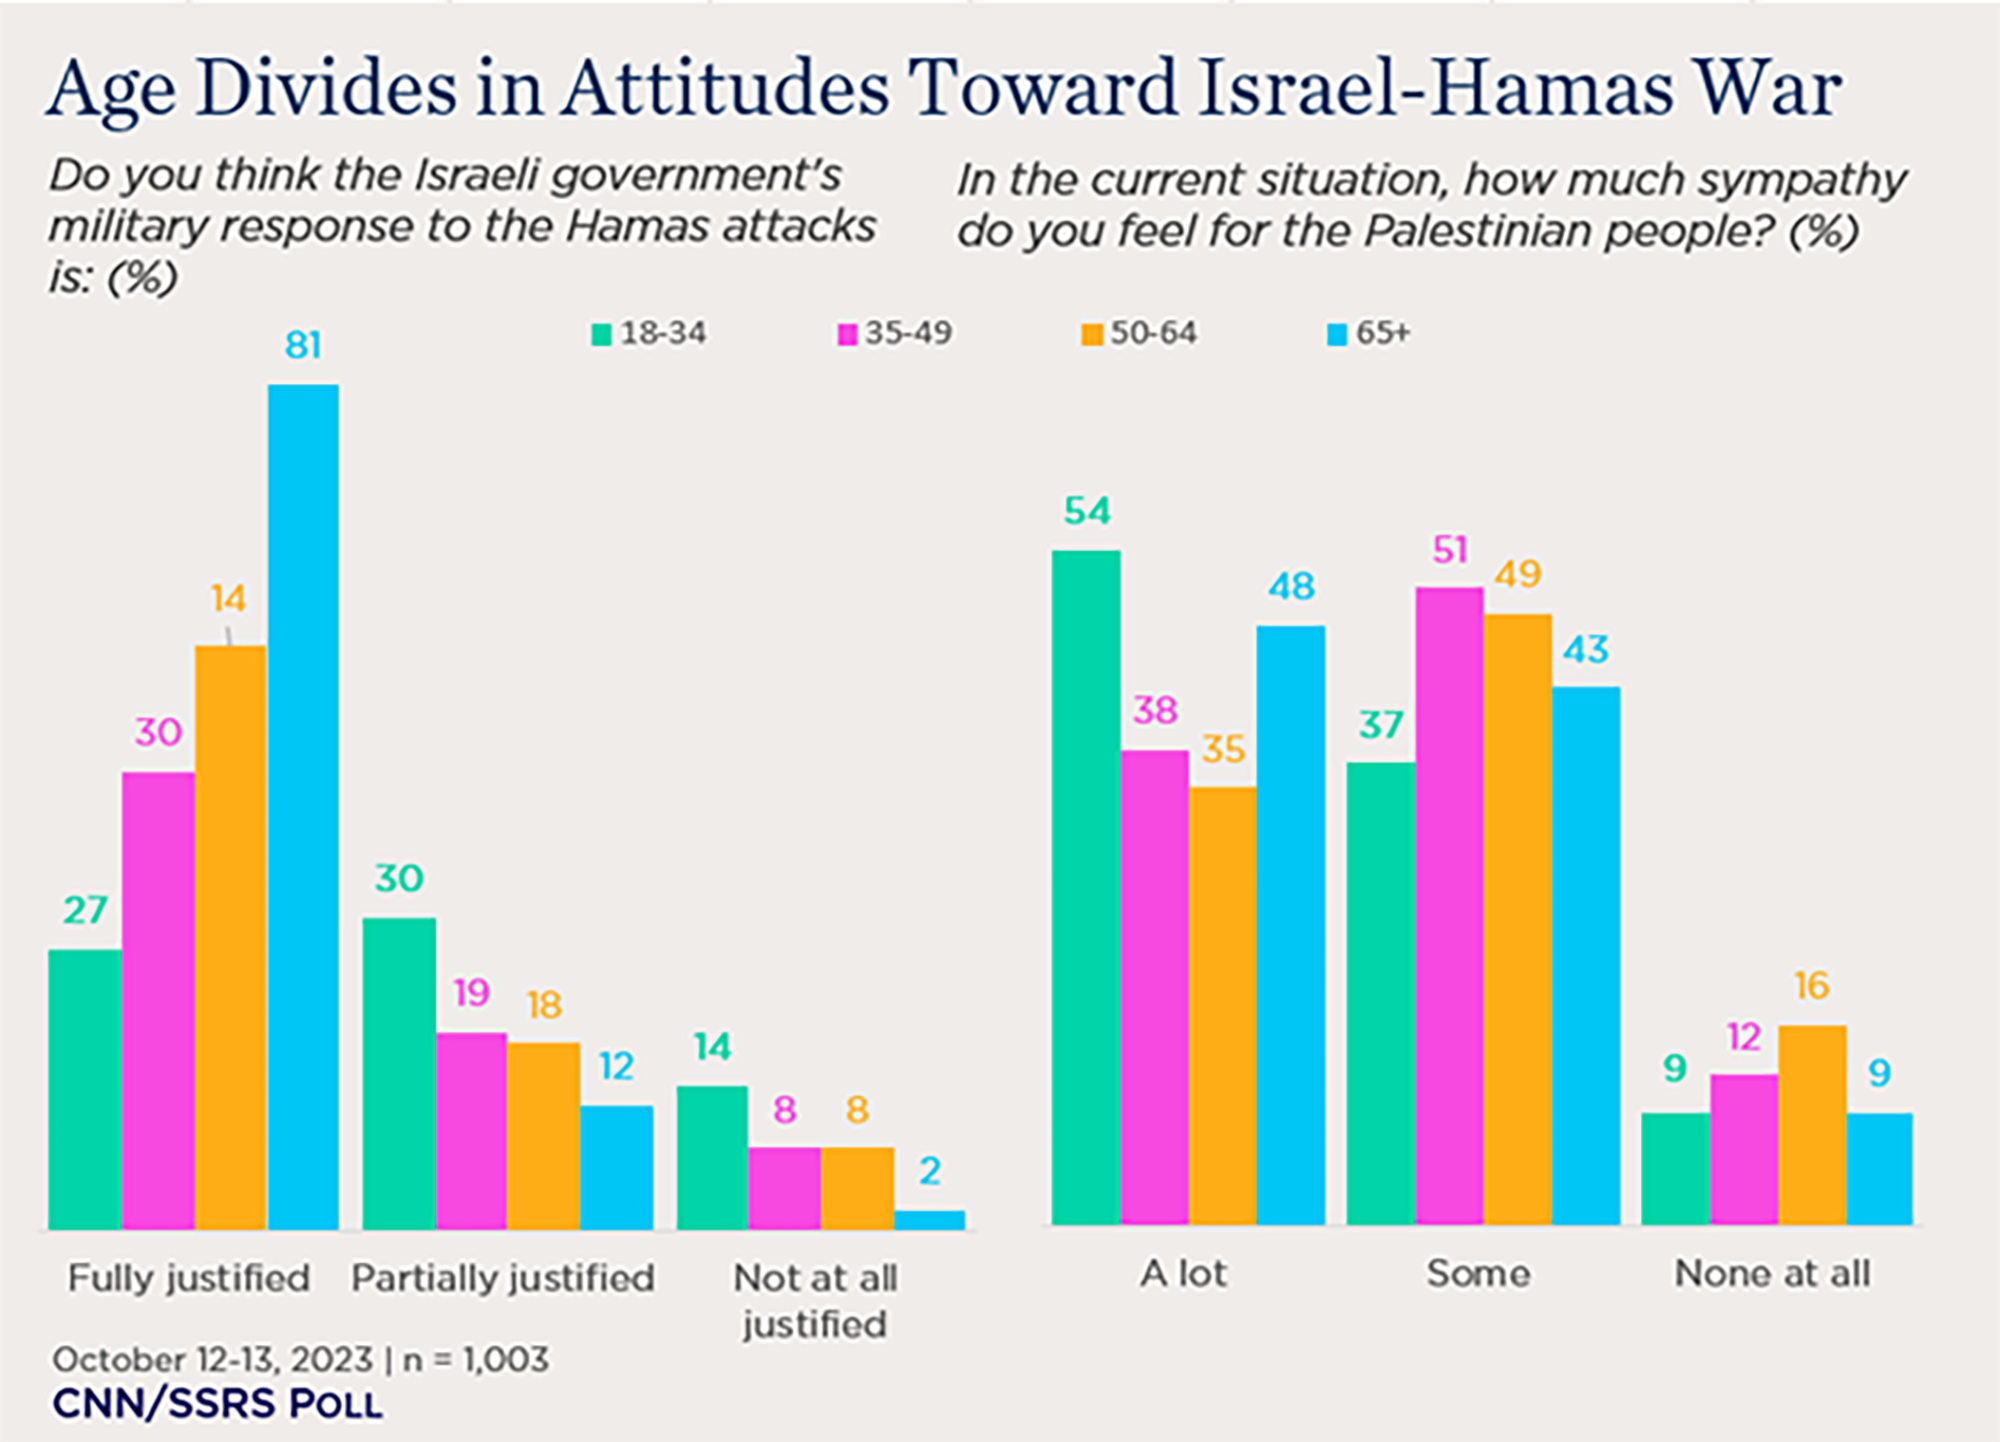 "bar charts showing age divides in attitudes toward Israel-Hamas war"